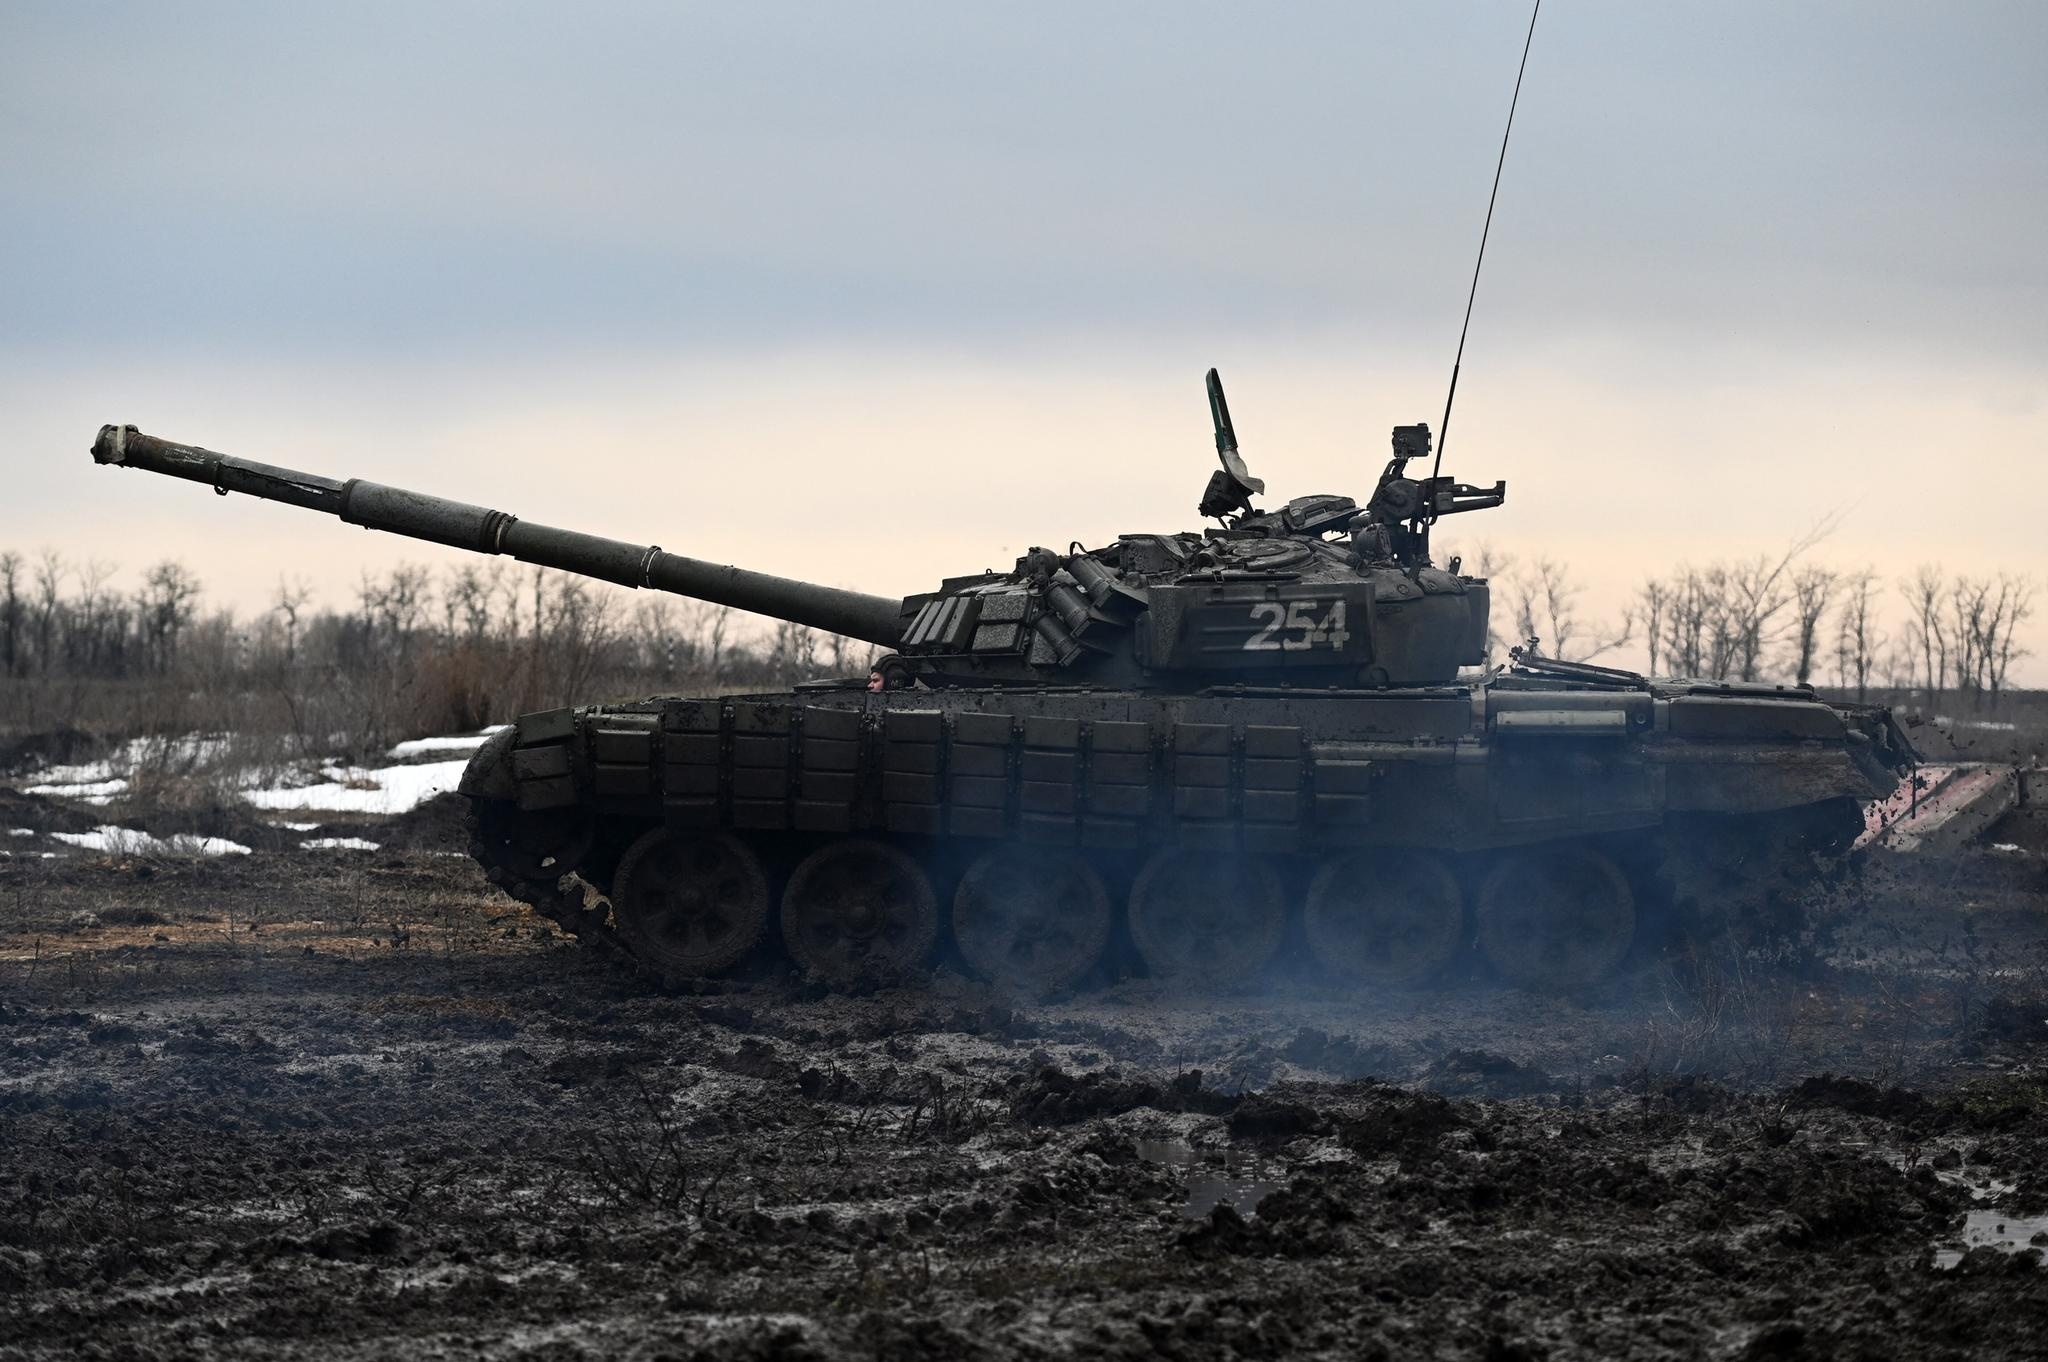 Venäjän T-72B3-taistelupanssarivaunu sotilasharjoituksissa 3. helmikuuta 2022.